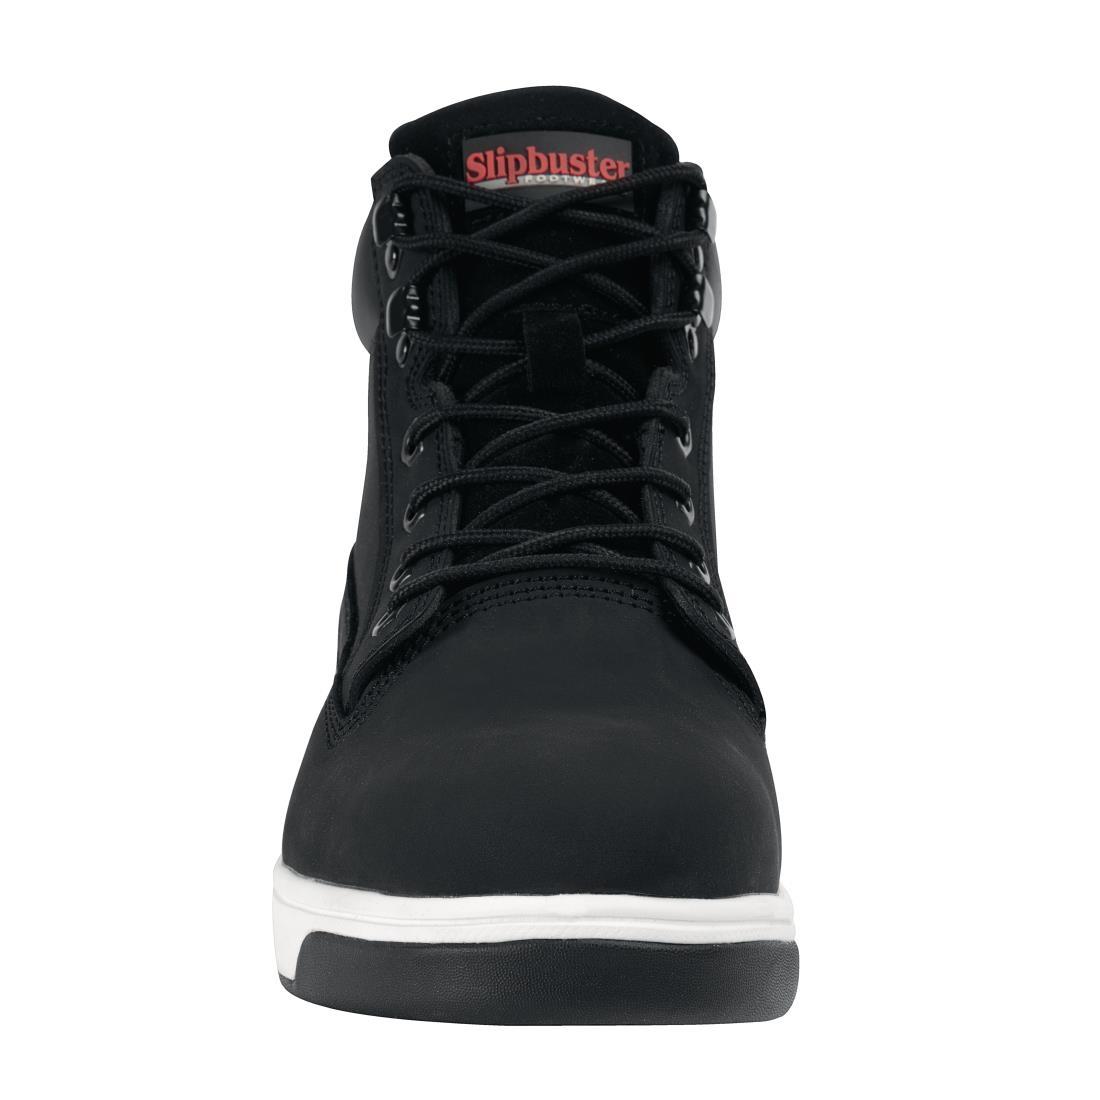 Slipbuster Sneaker Boots Black 37 - BB422-37  - 3